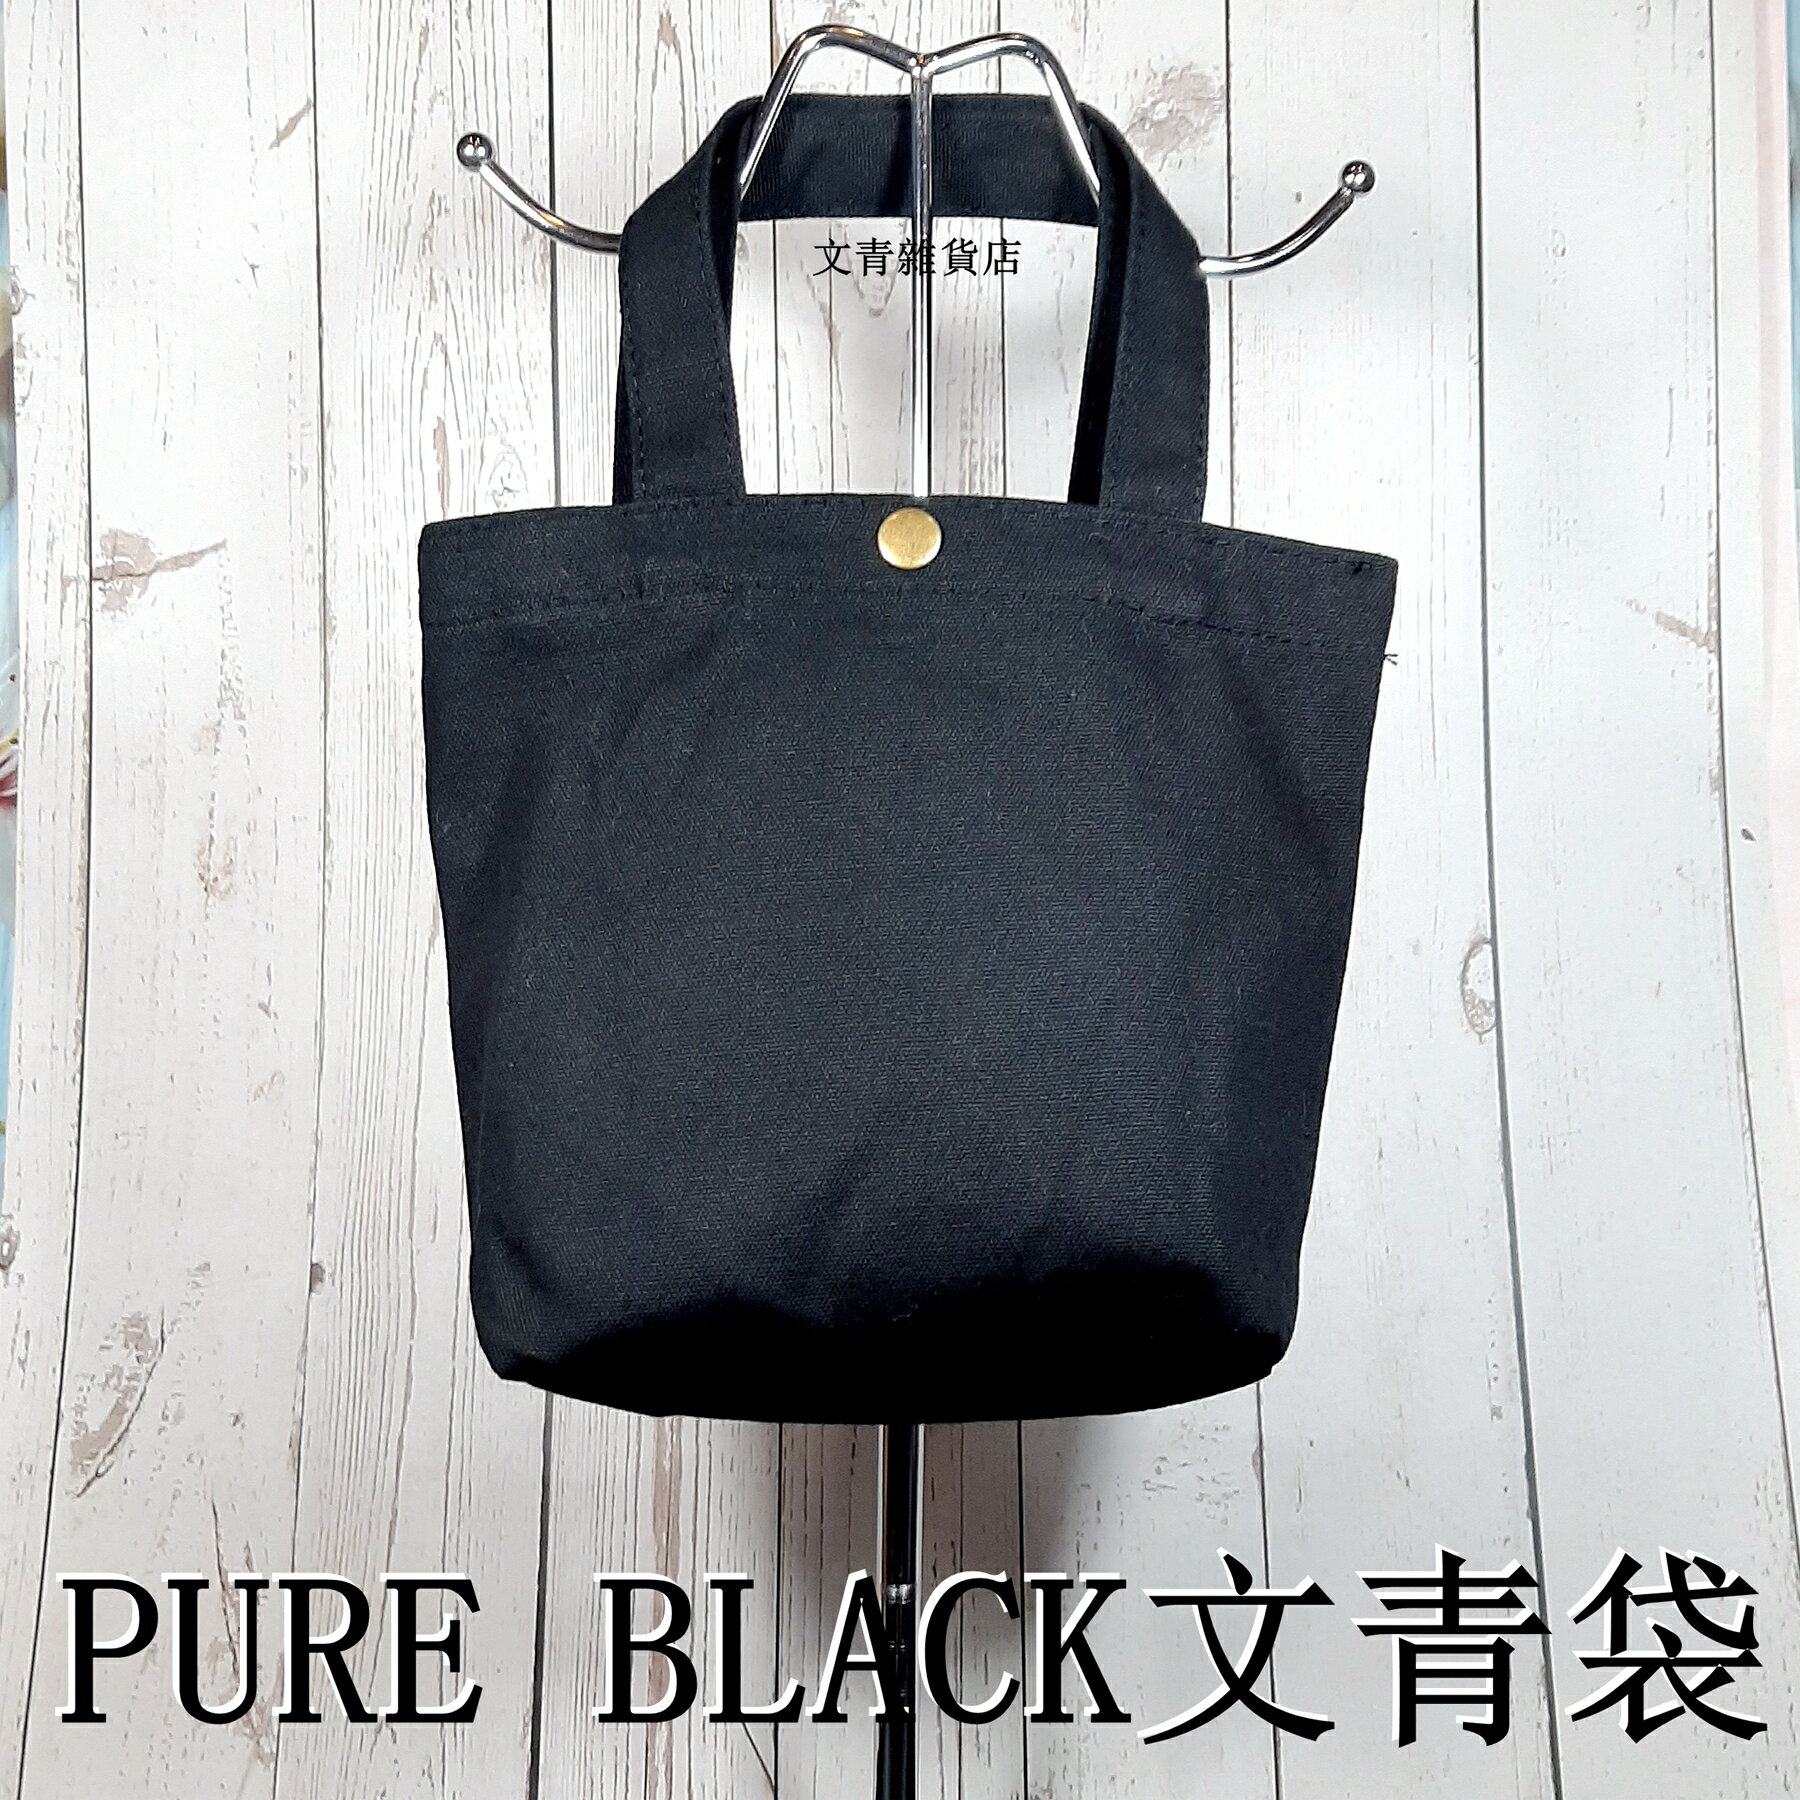 PURE WHITE/PURE BLACK 純黑/純白文青袋 帆布袋 午餐小提袋 外出小提袋 便當袋 無印風輕便簡潔好用